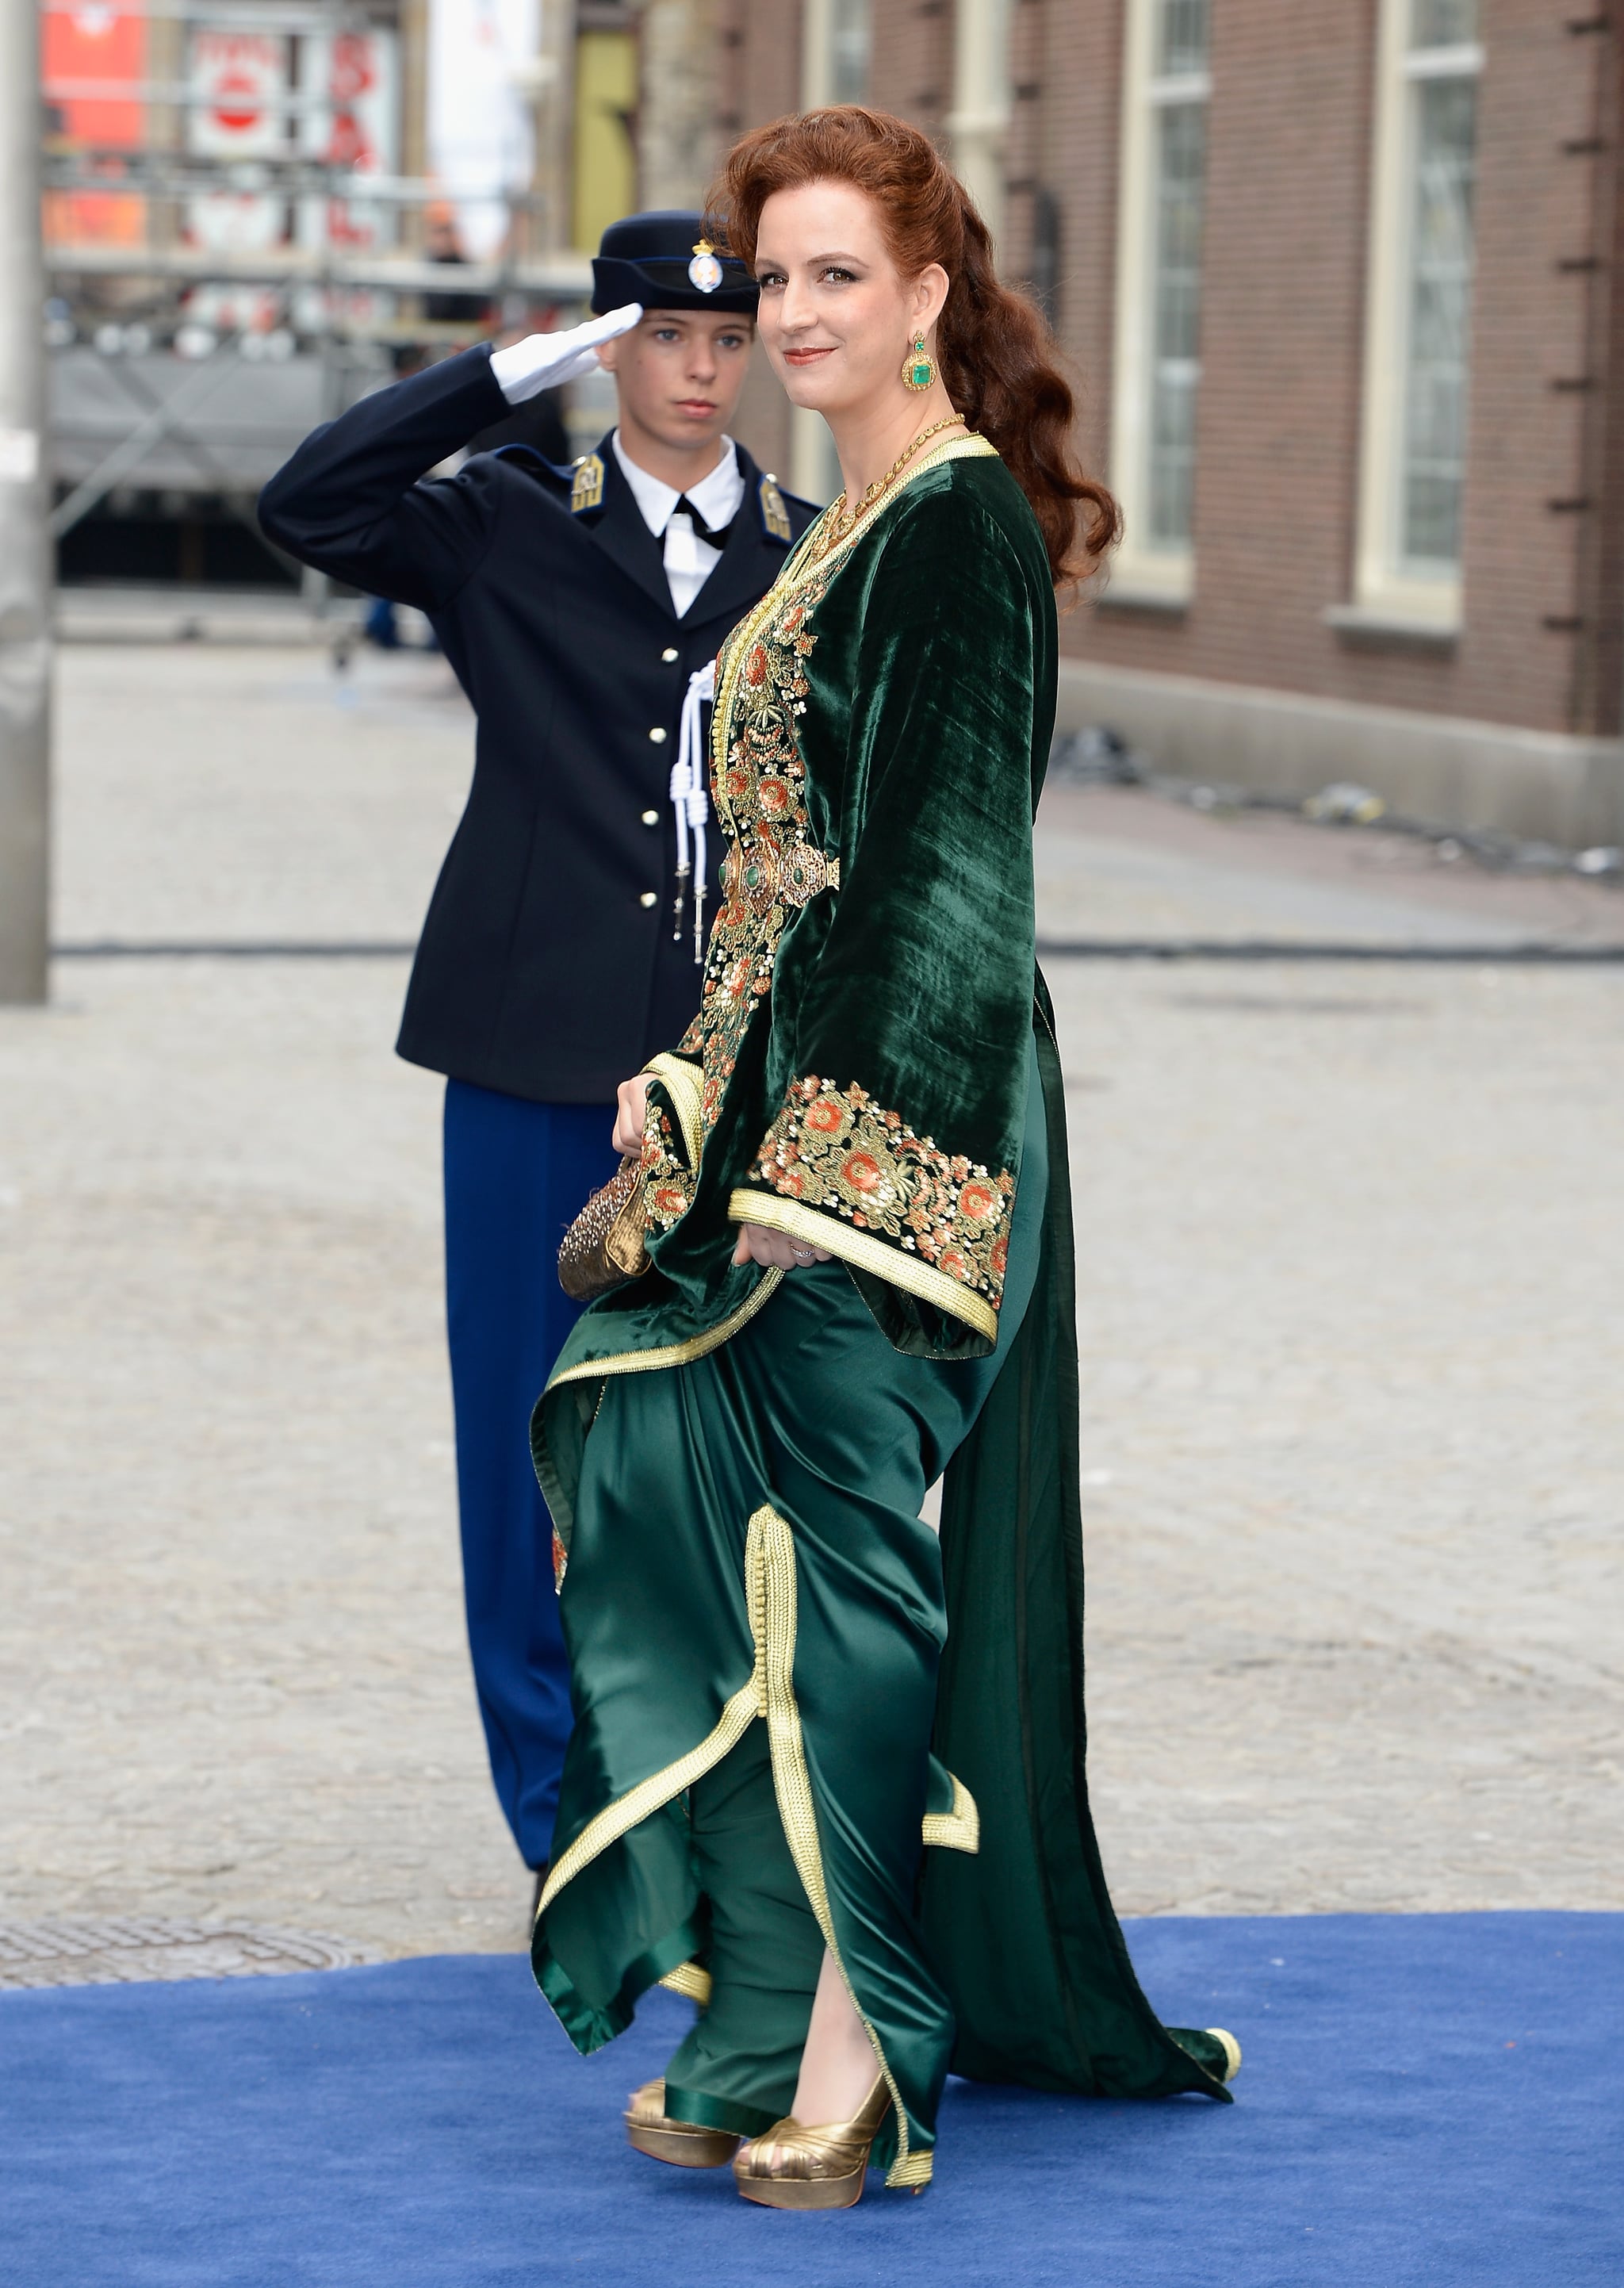 Princess Lalla Salma Of Morocco Wore A Daring Dress Royals From 